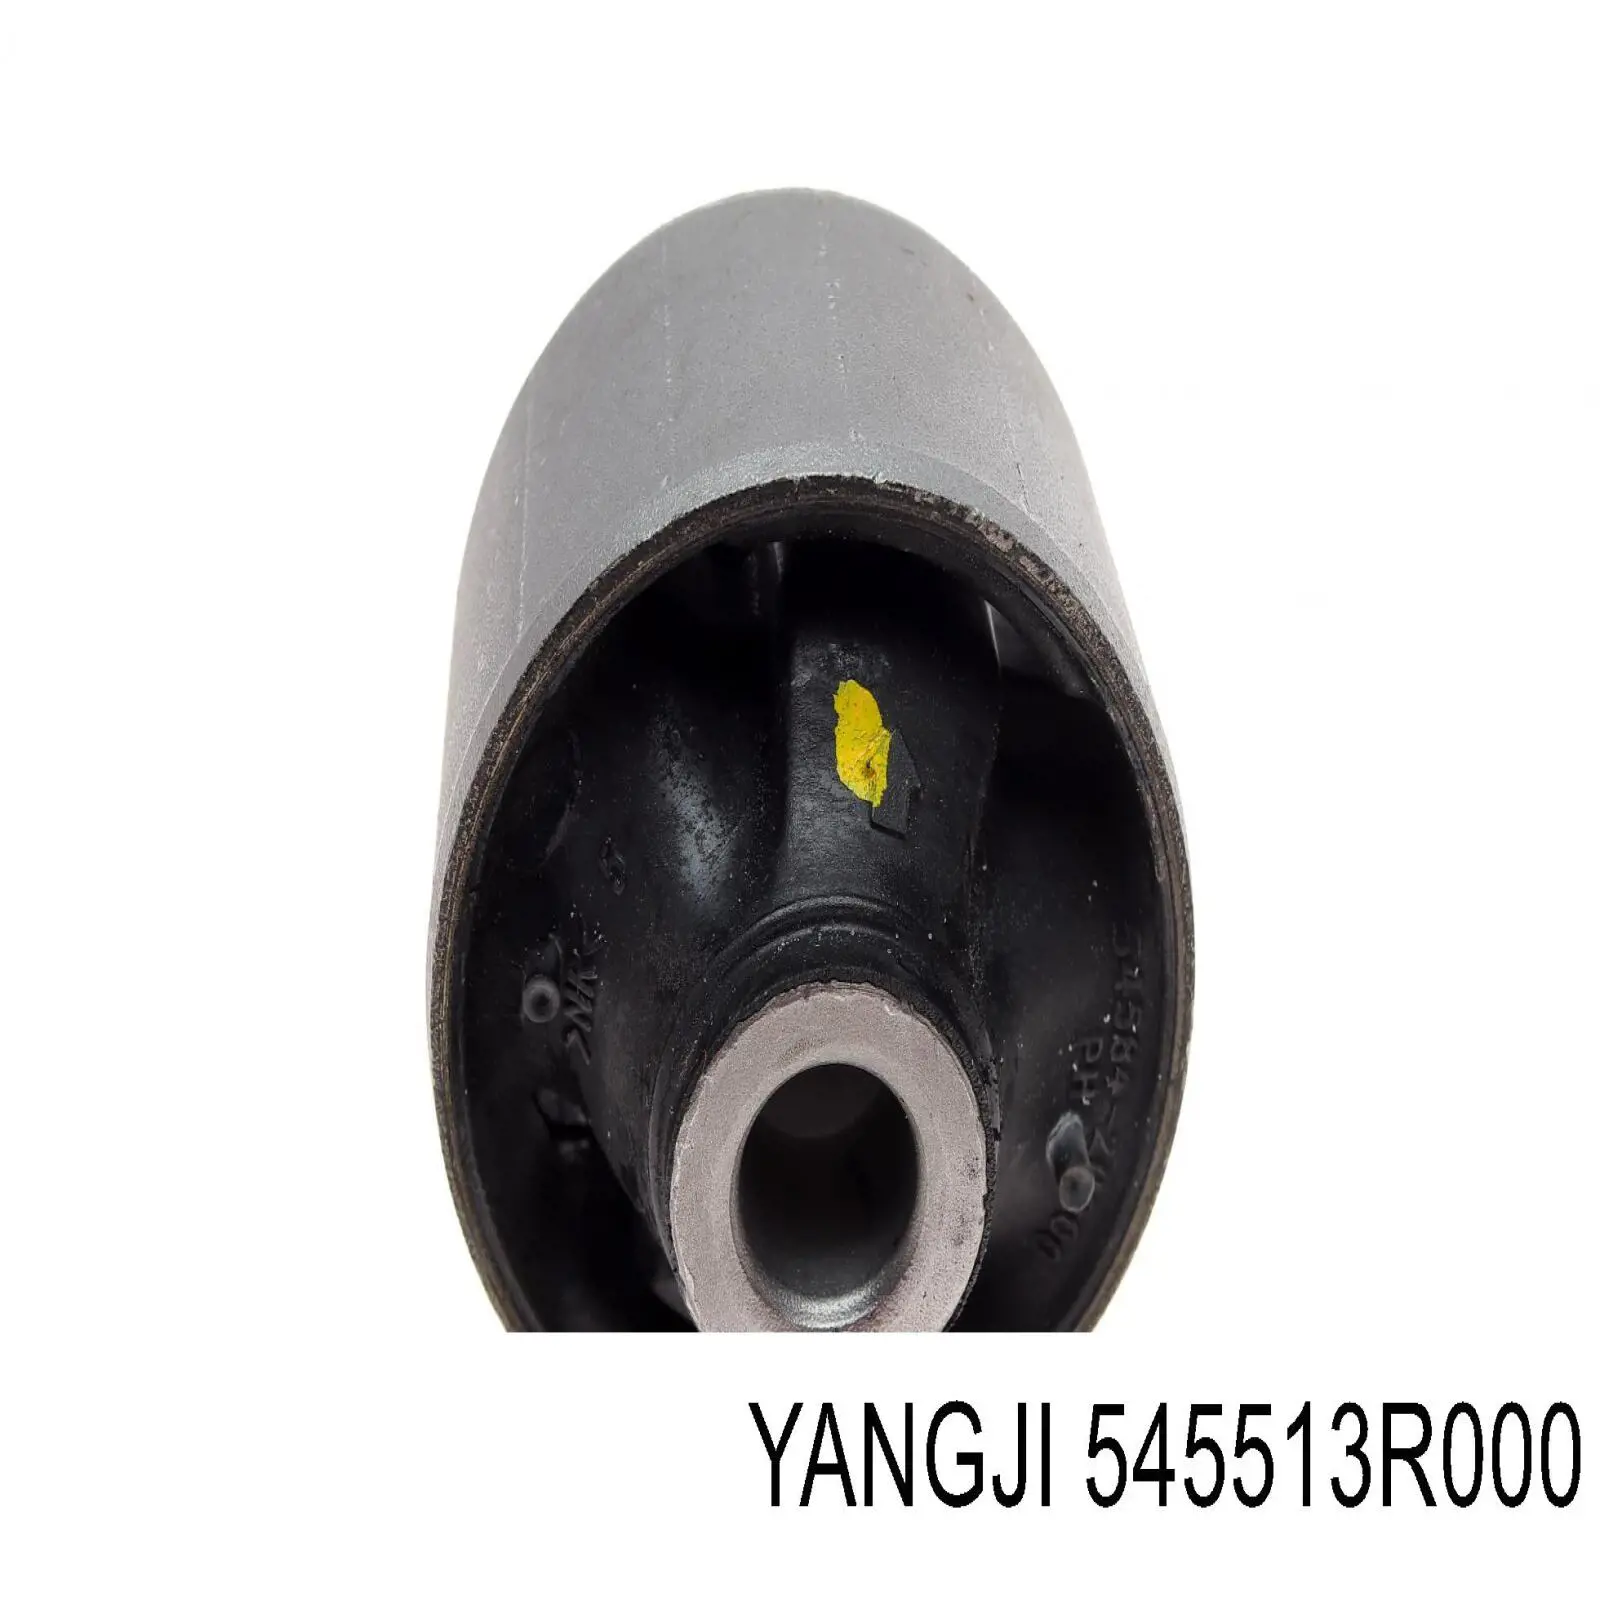 545513R000 Yangji silentblock de suspensión delantero inferior